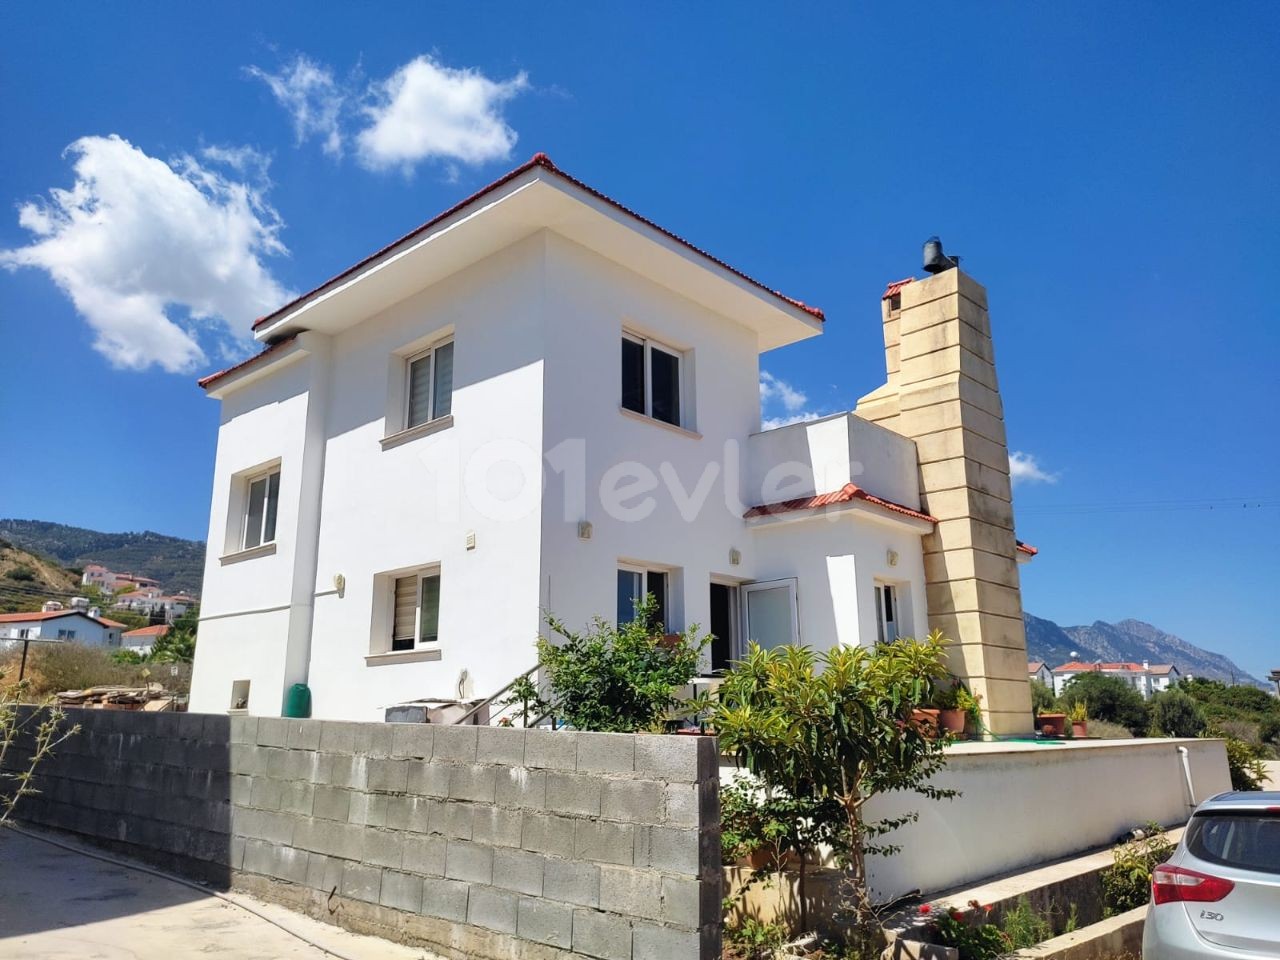 For Sale Villa 4+1 in Kyrenia Alsancak